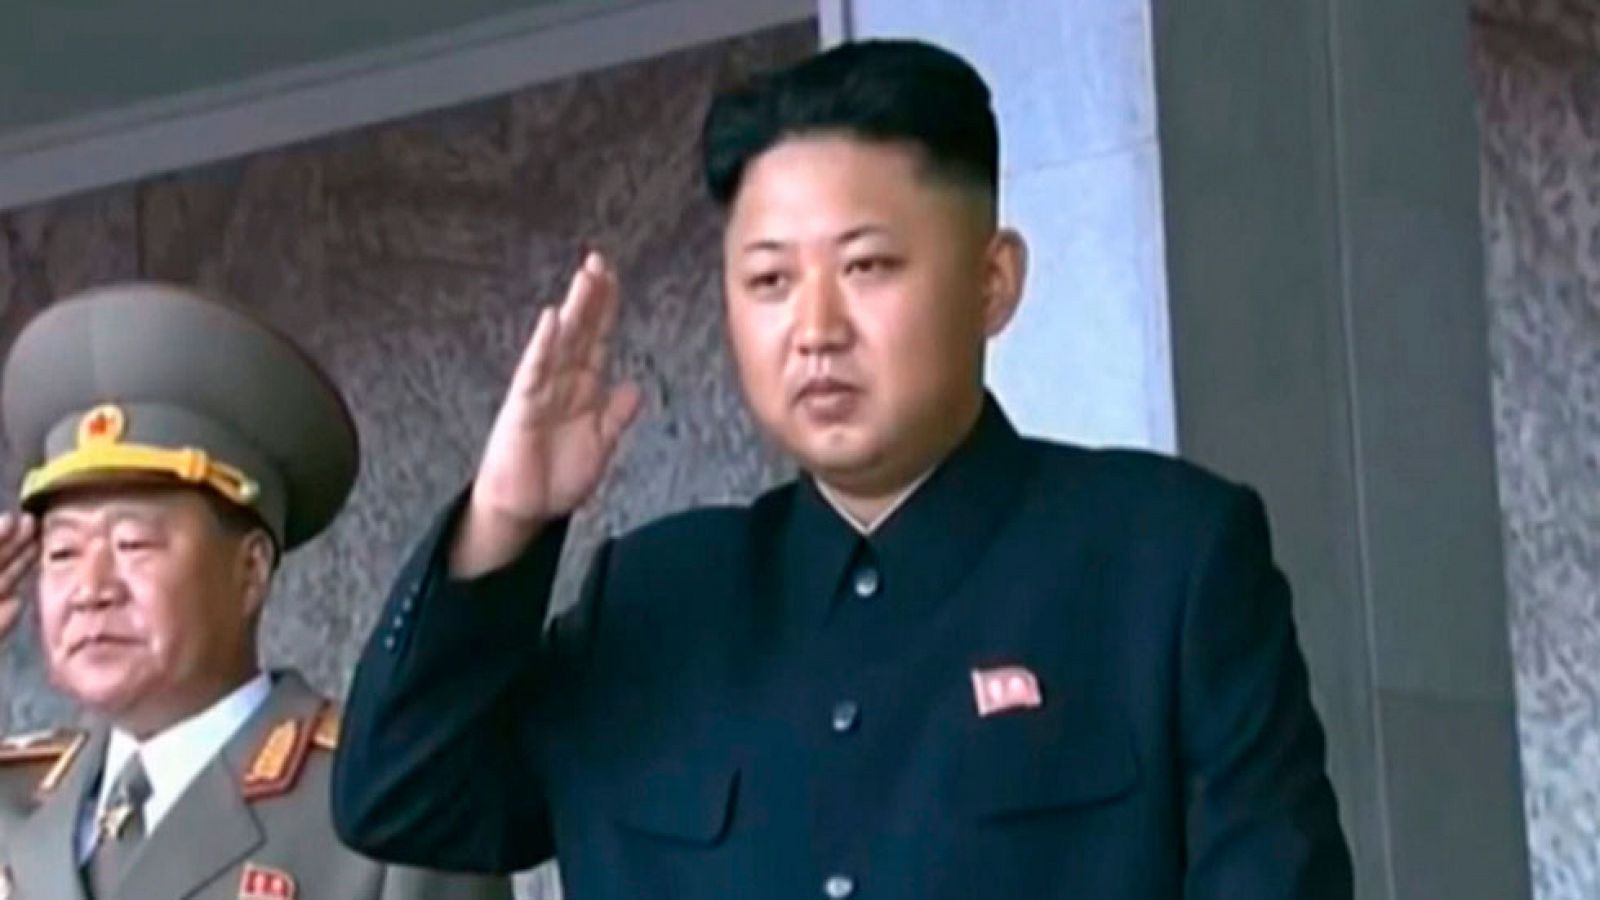 La noche tematica - Kim Jong Un: 'Biografia no aoutorizada' - Así empieza